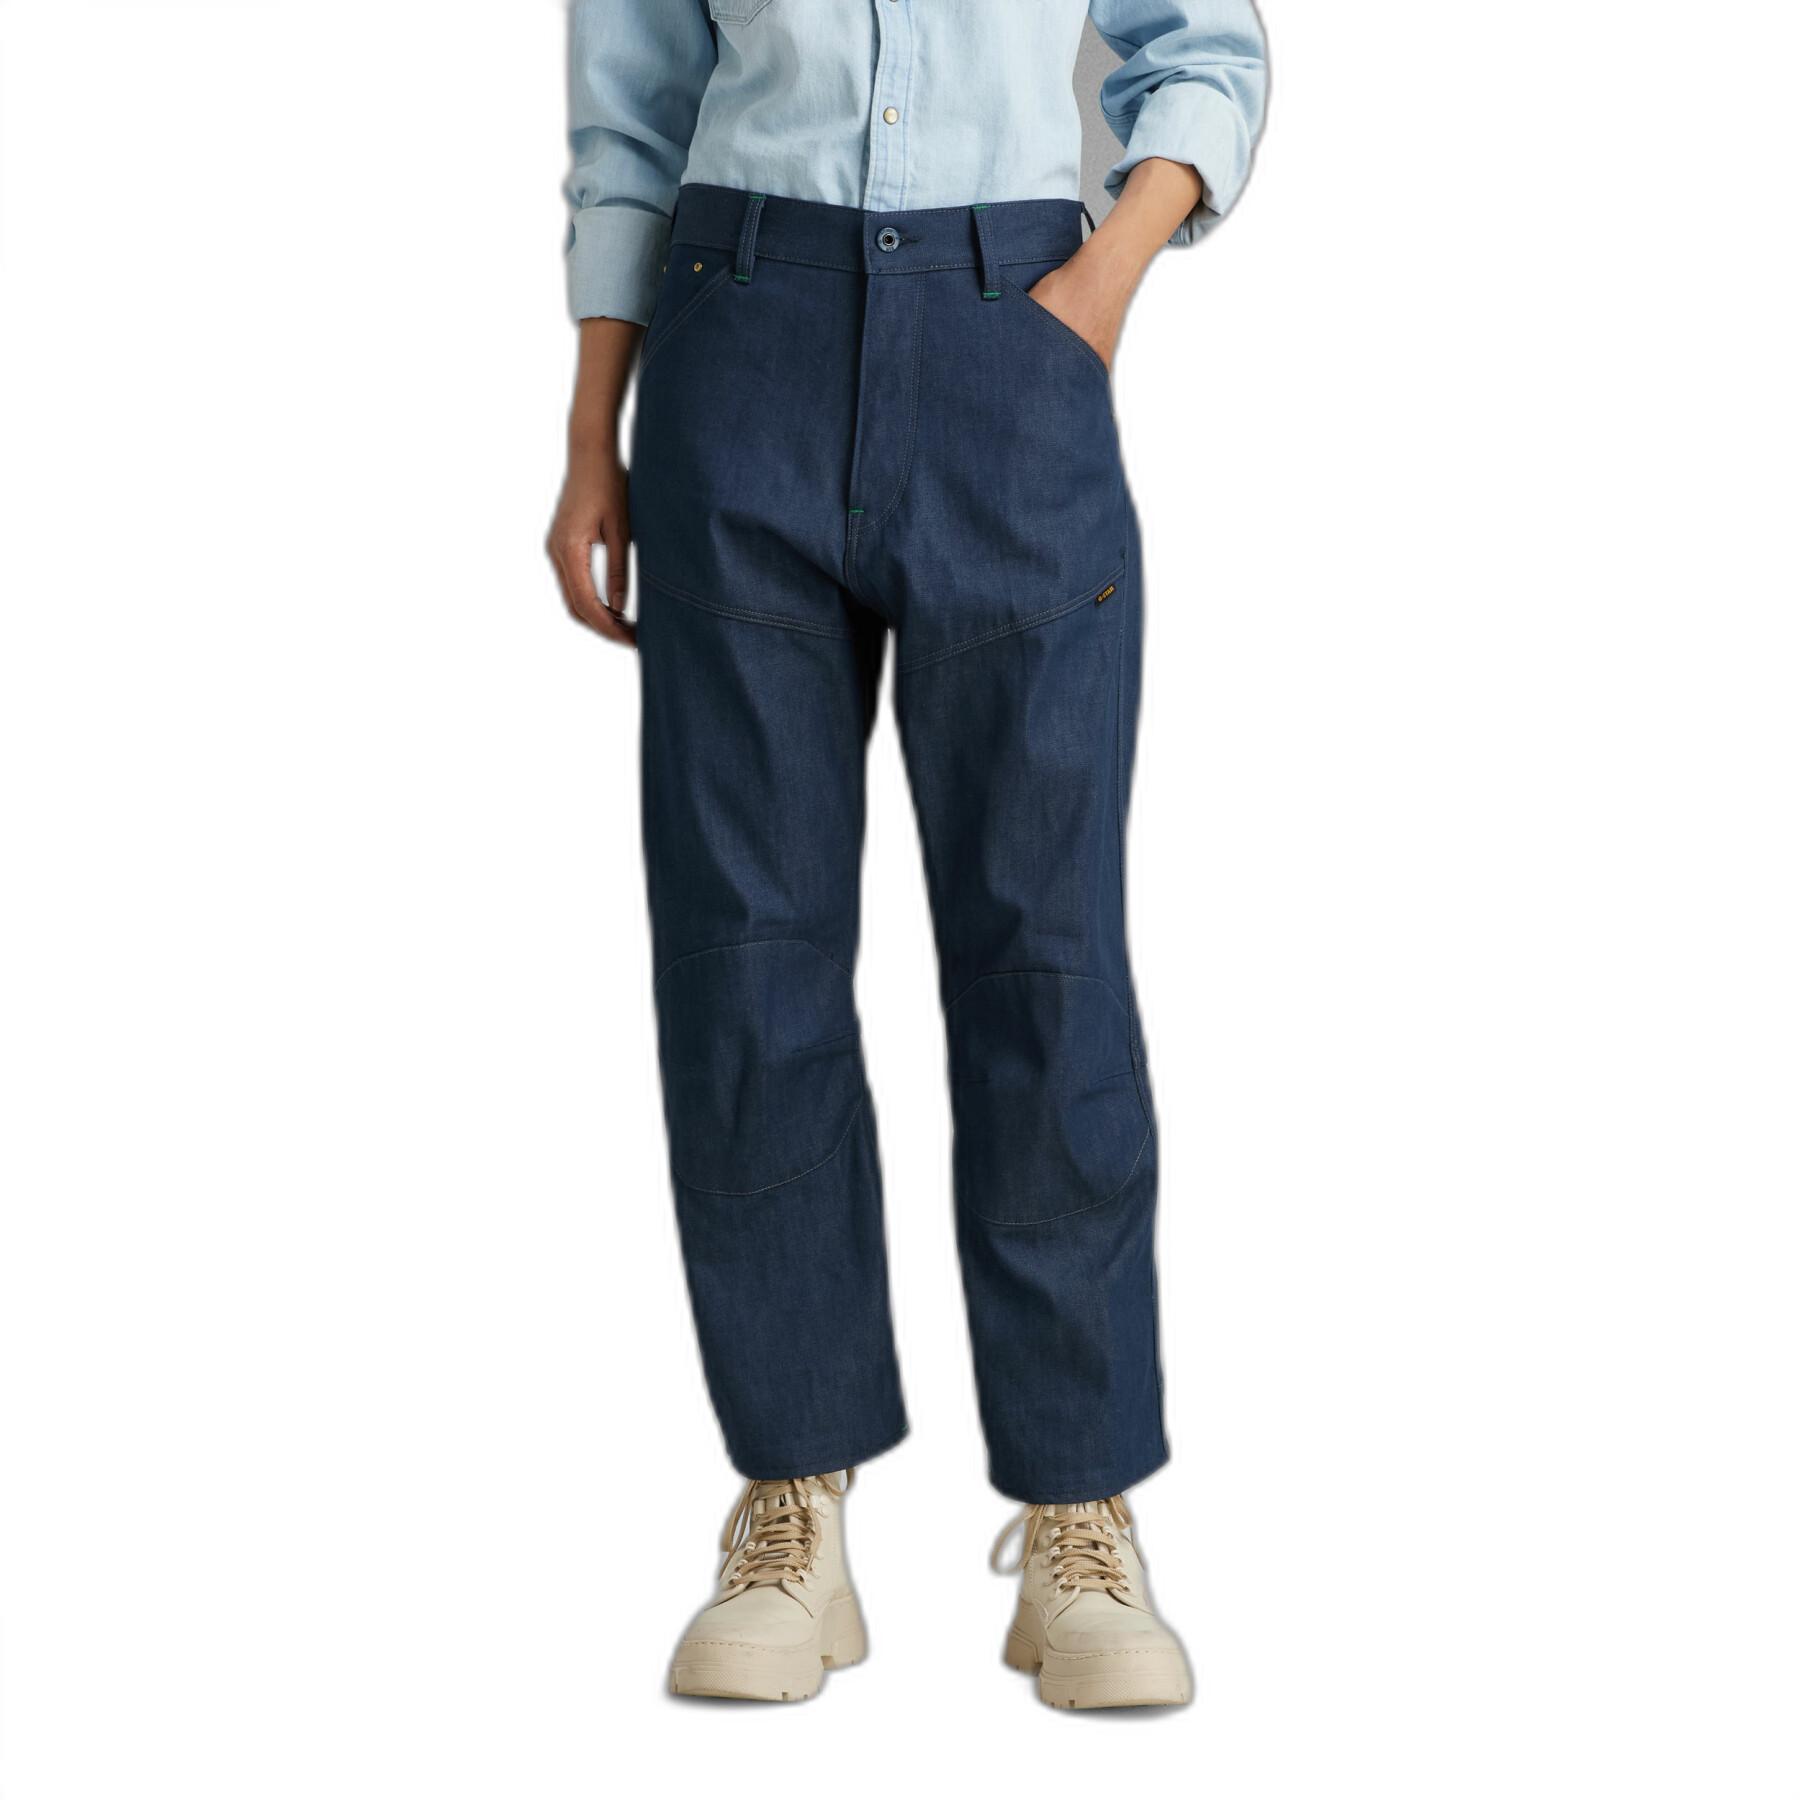 Women's short bootcut jeans G-Star 5620 3D